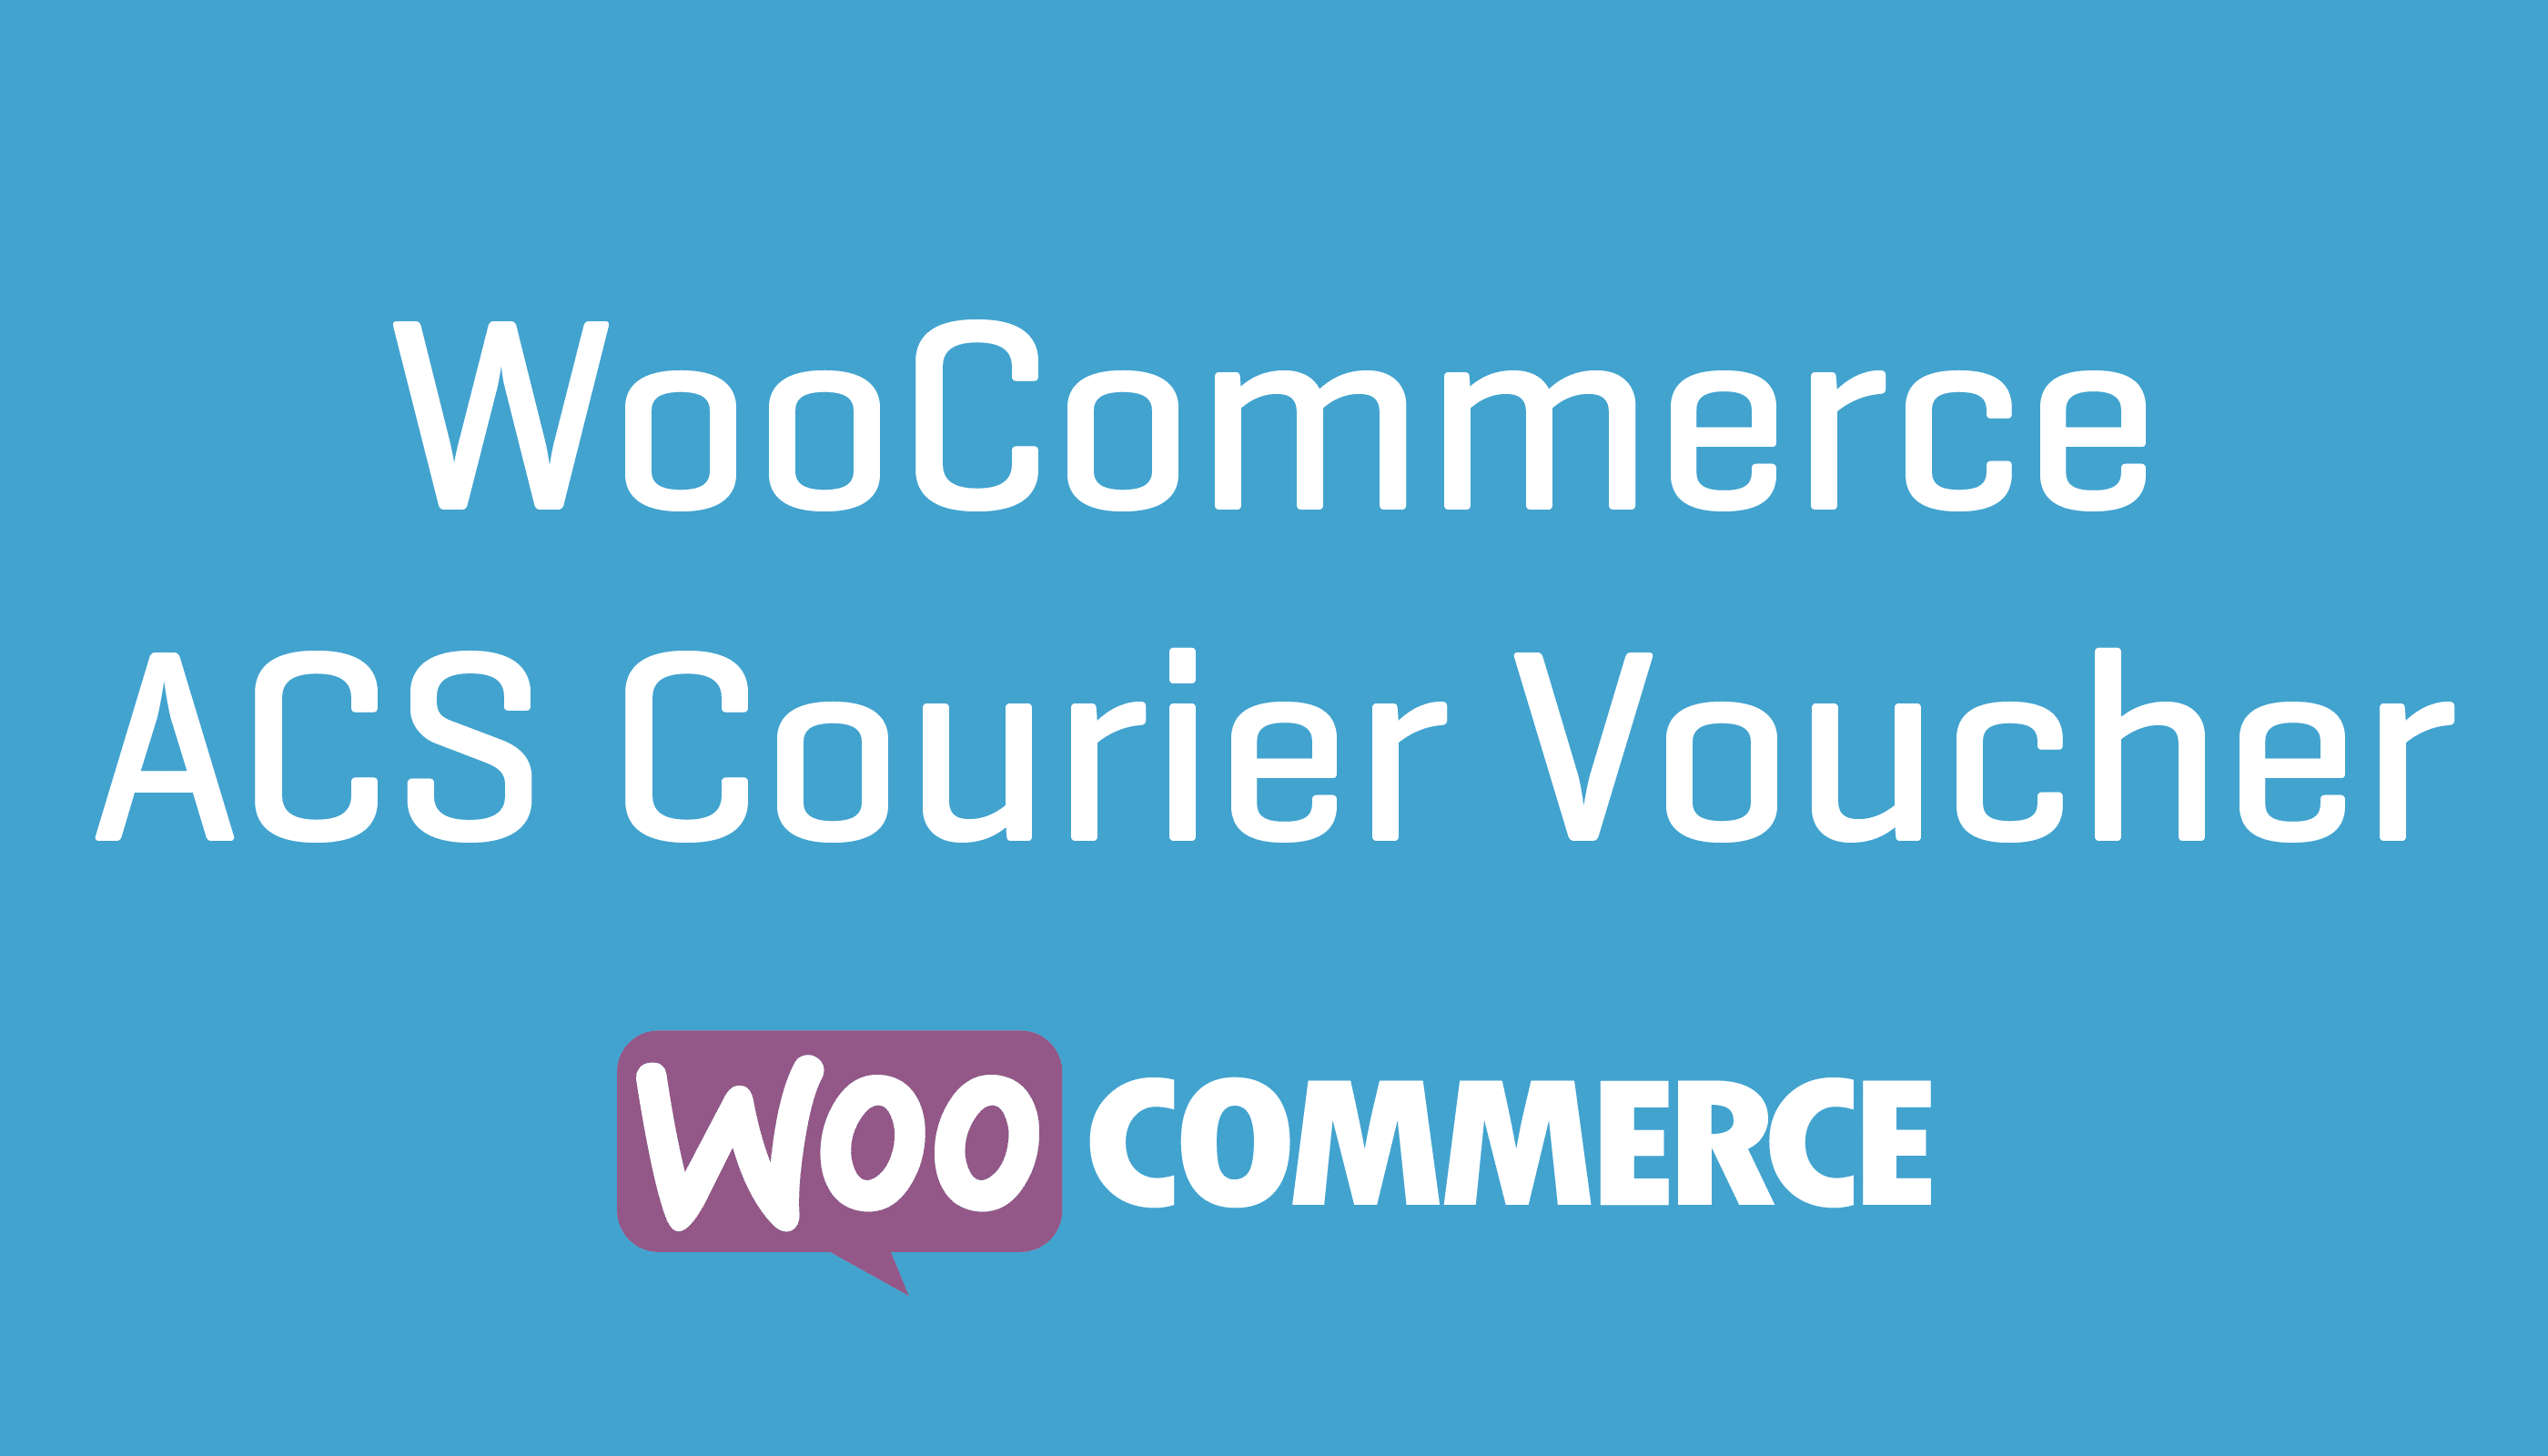 WooCommerce ACS Courier Voucher